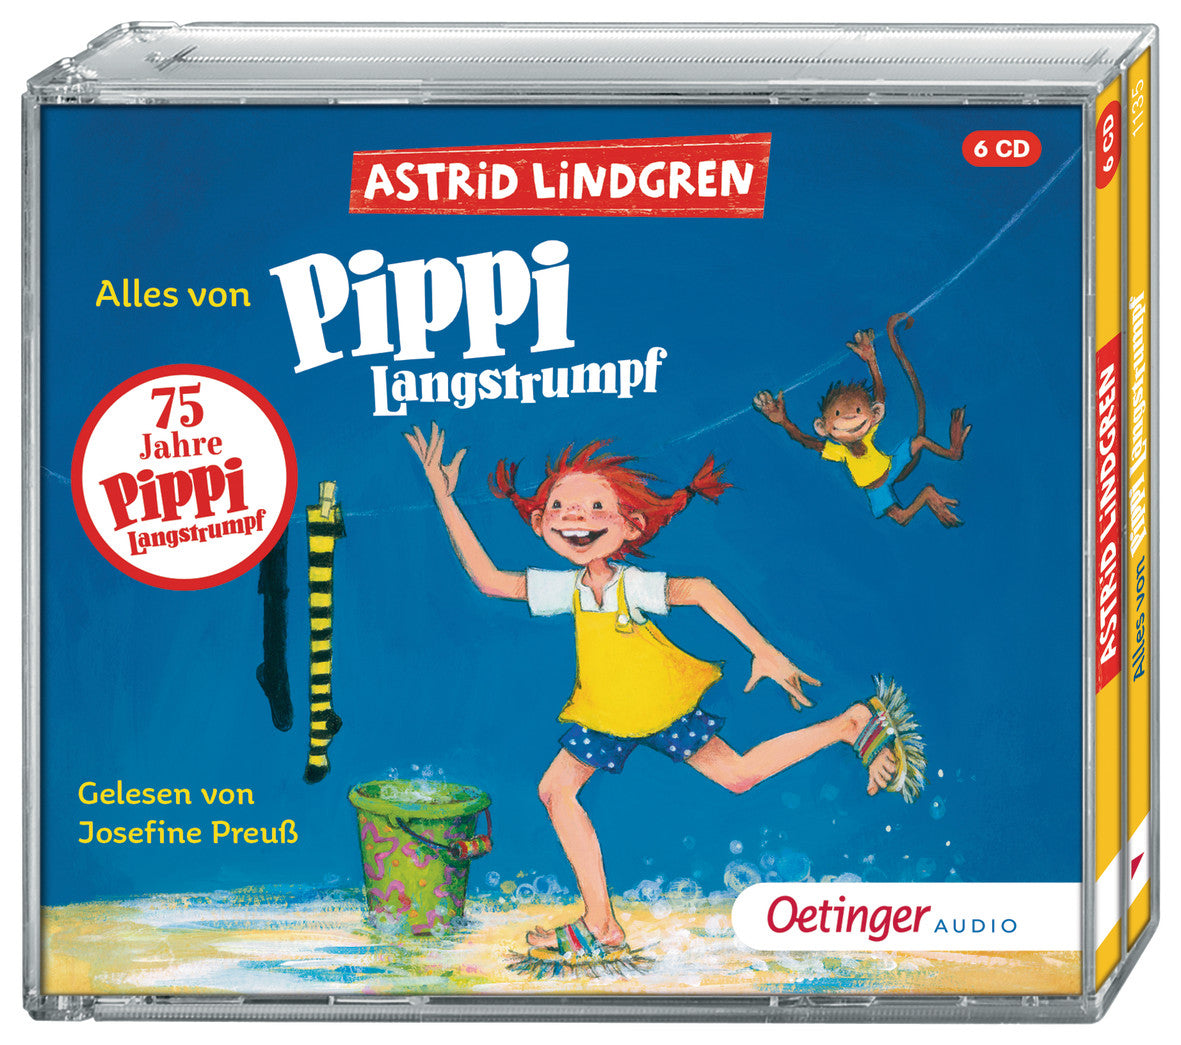 Alles von Pippi Langstrumpf